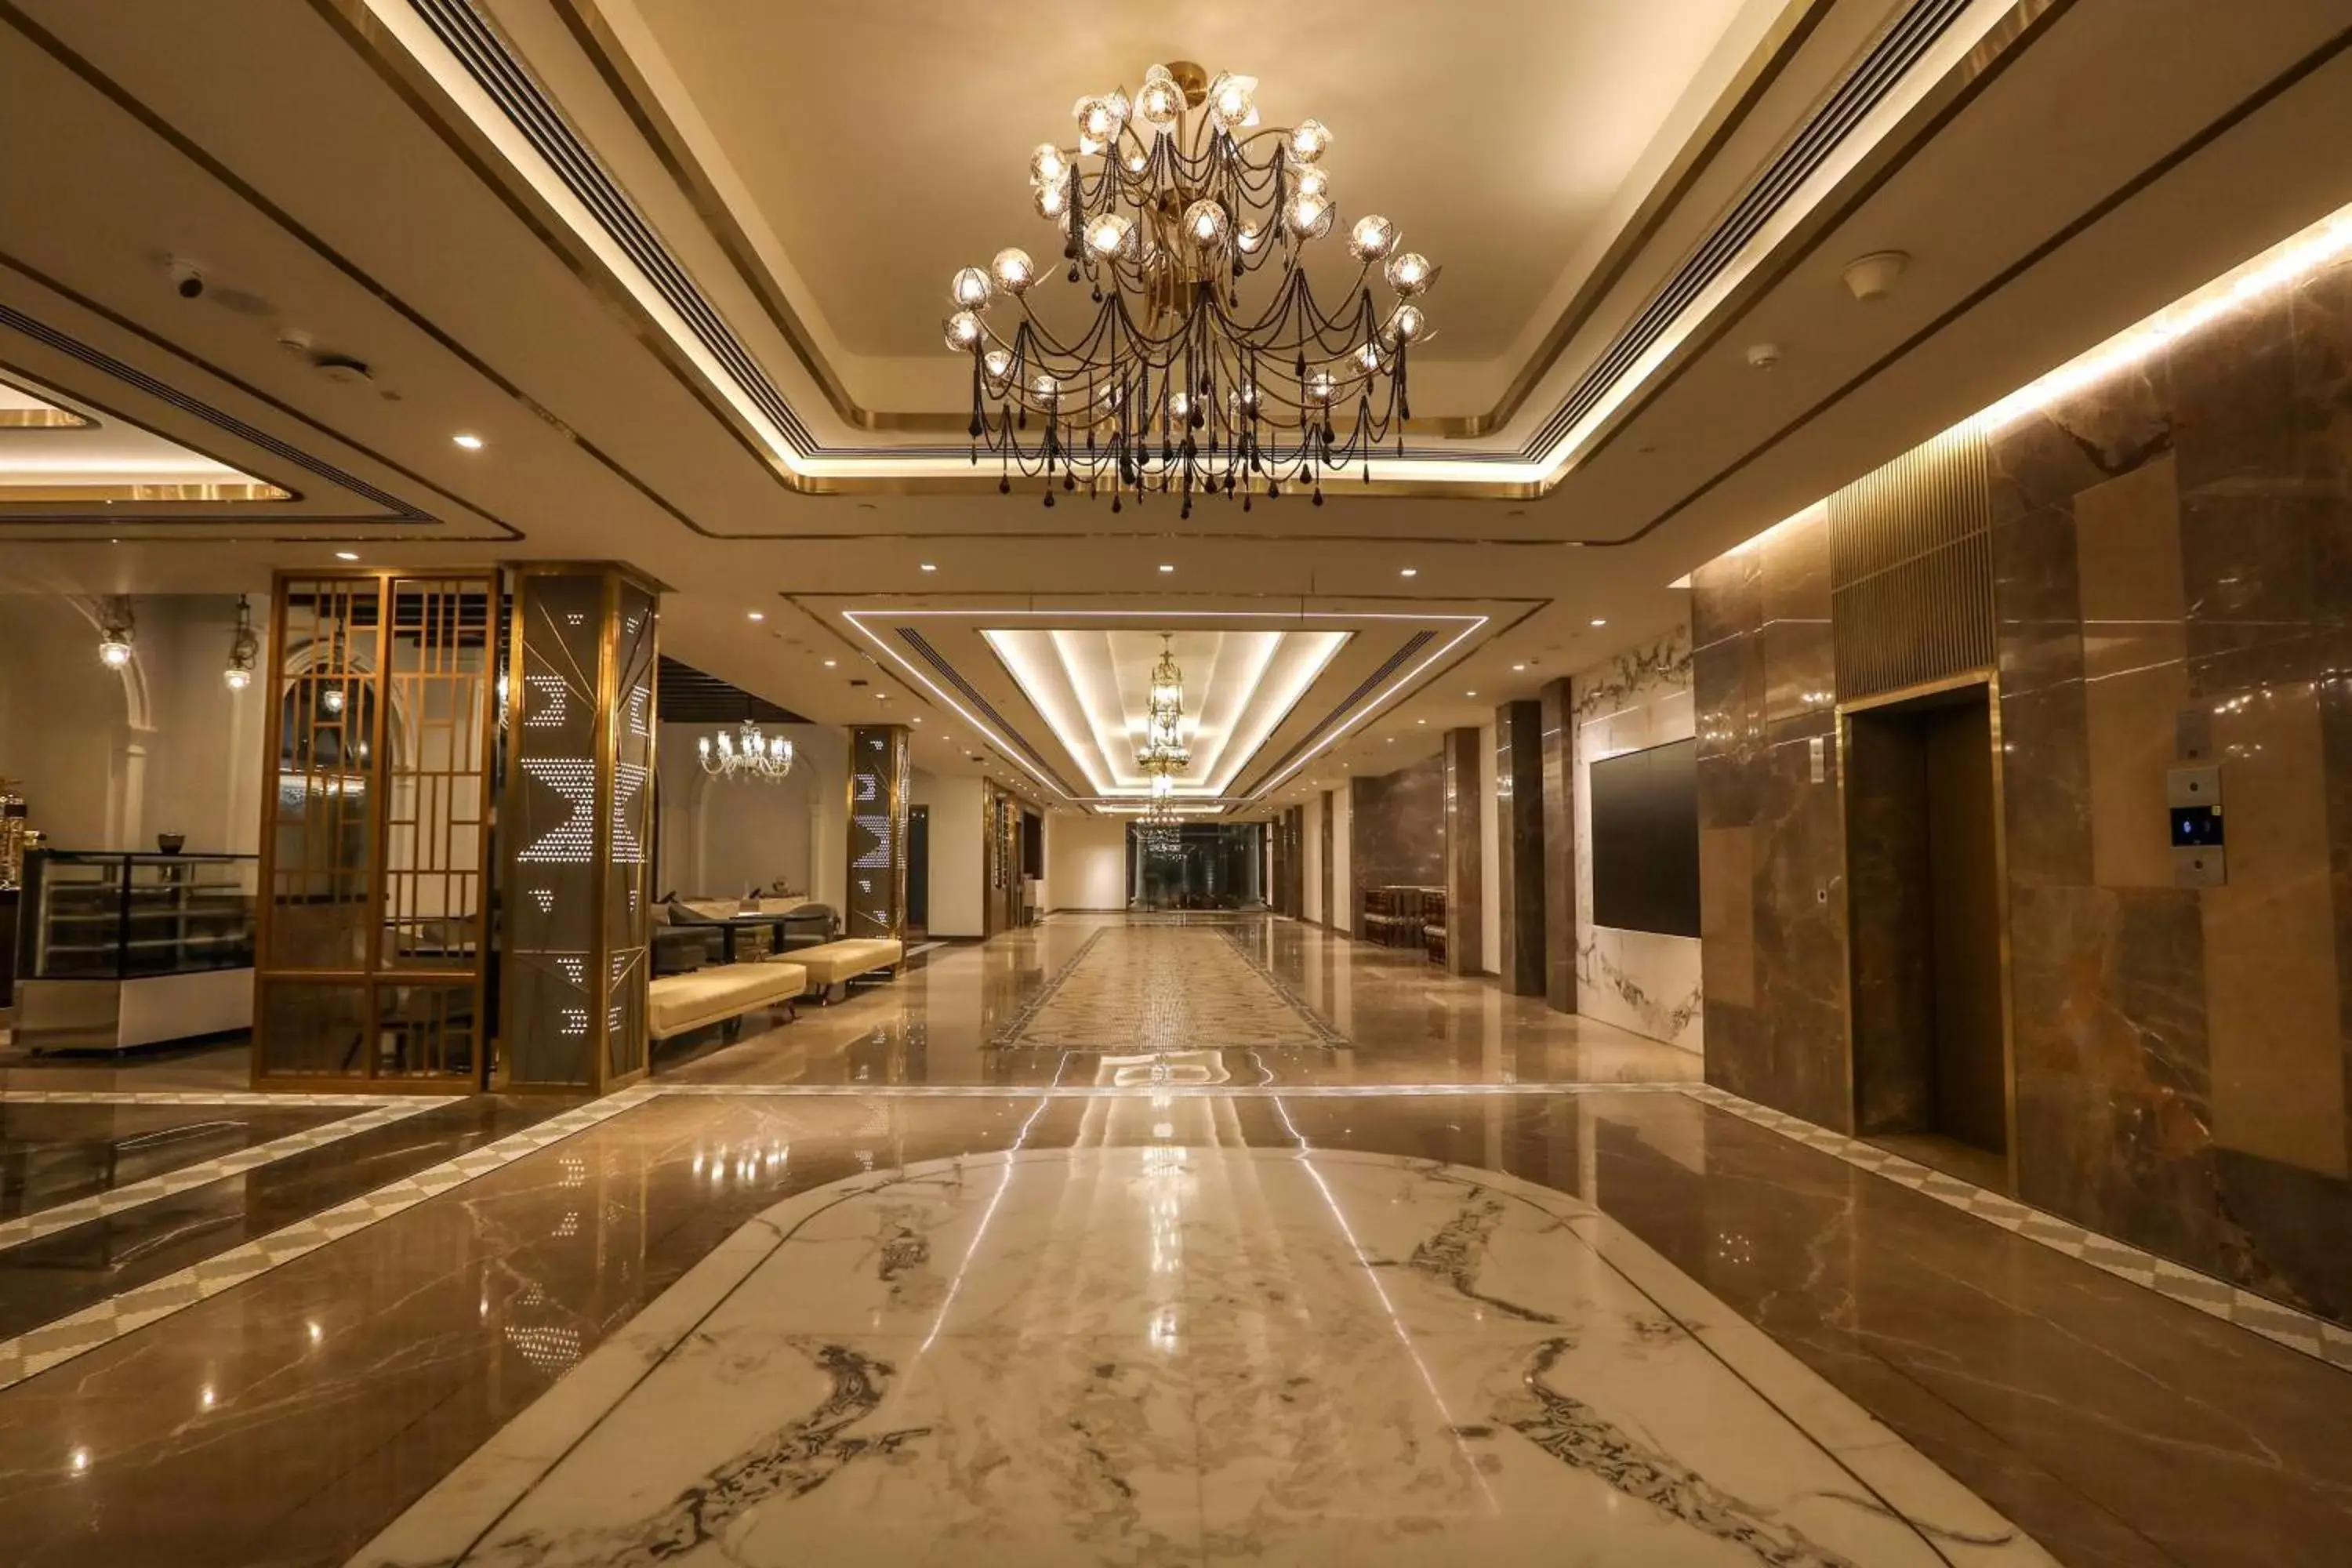 Lobby or reception in Radisson Blu Hotel GRT, Chennai International Airport